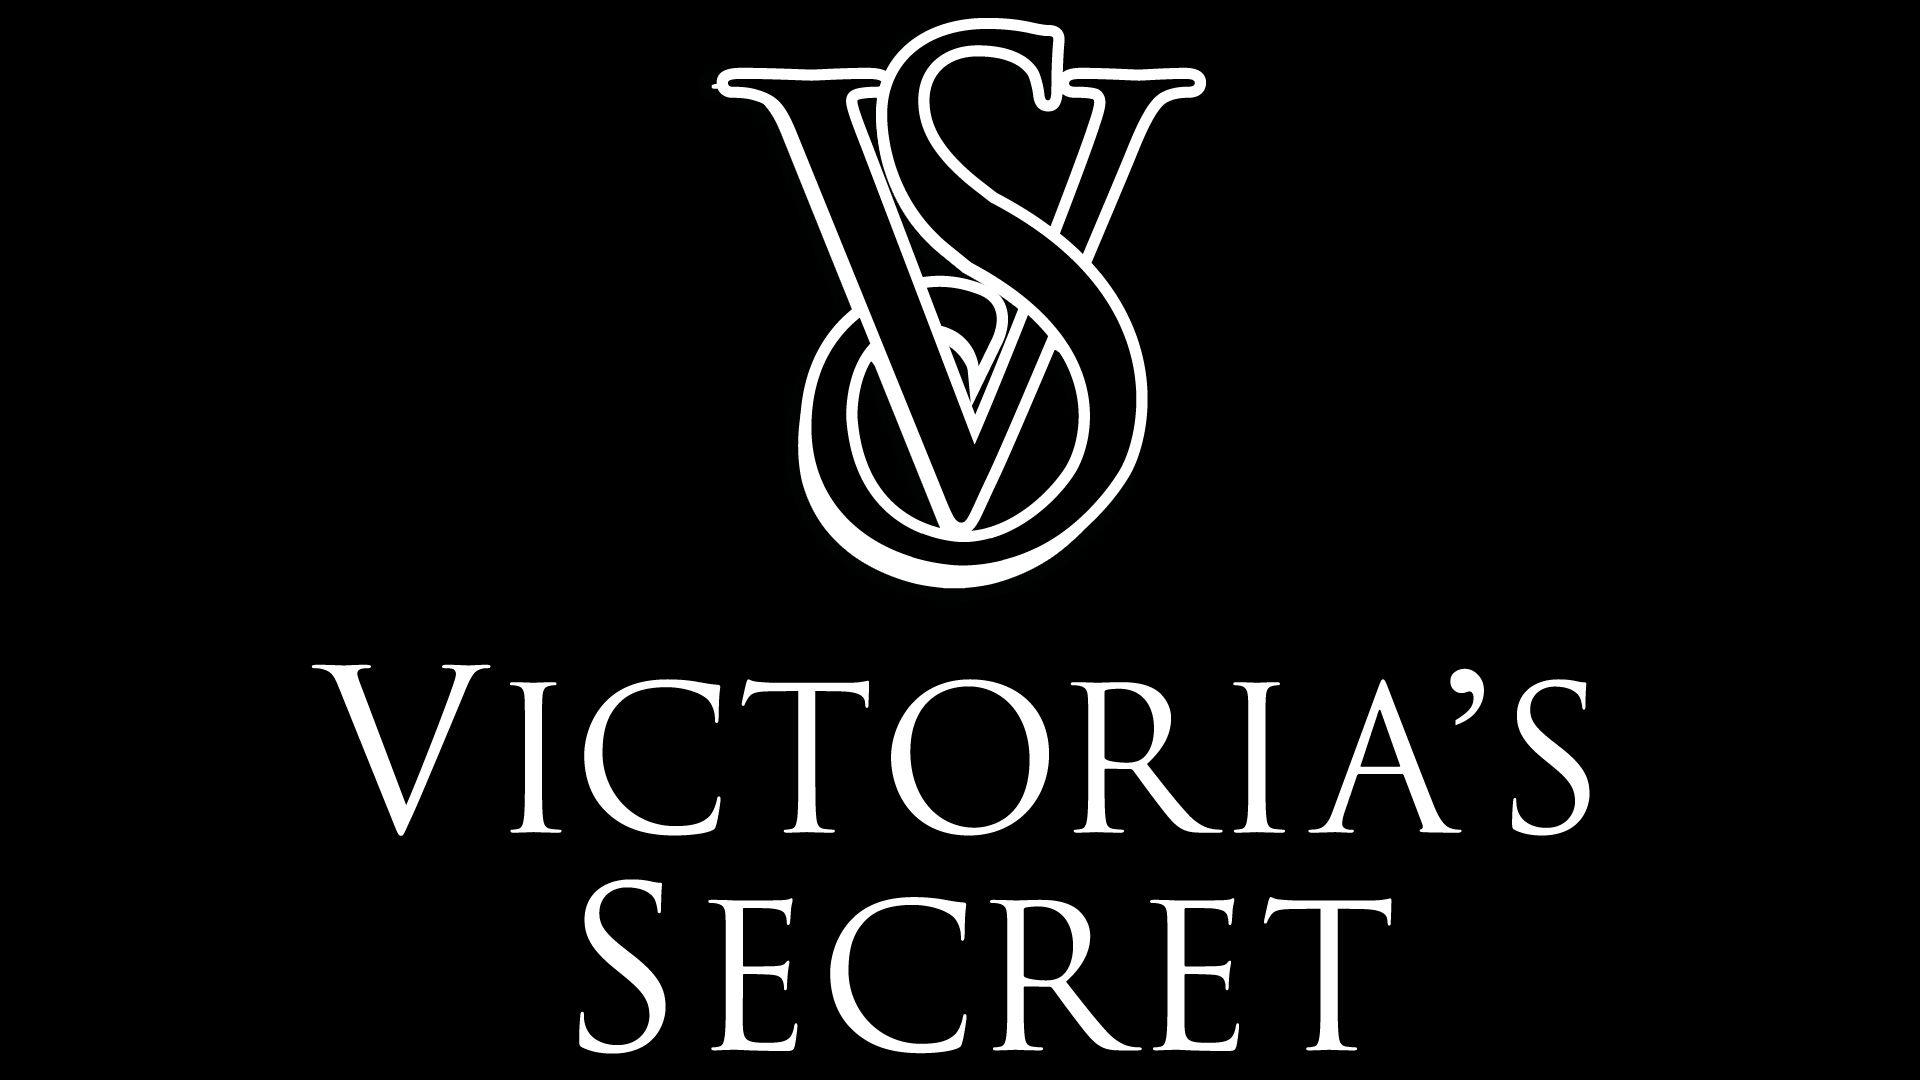 Black and White Victoria Secret Logo - Victoria Secret Logo, Victoria Secret Symbol, History and Evolution